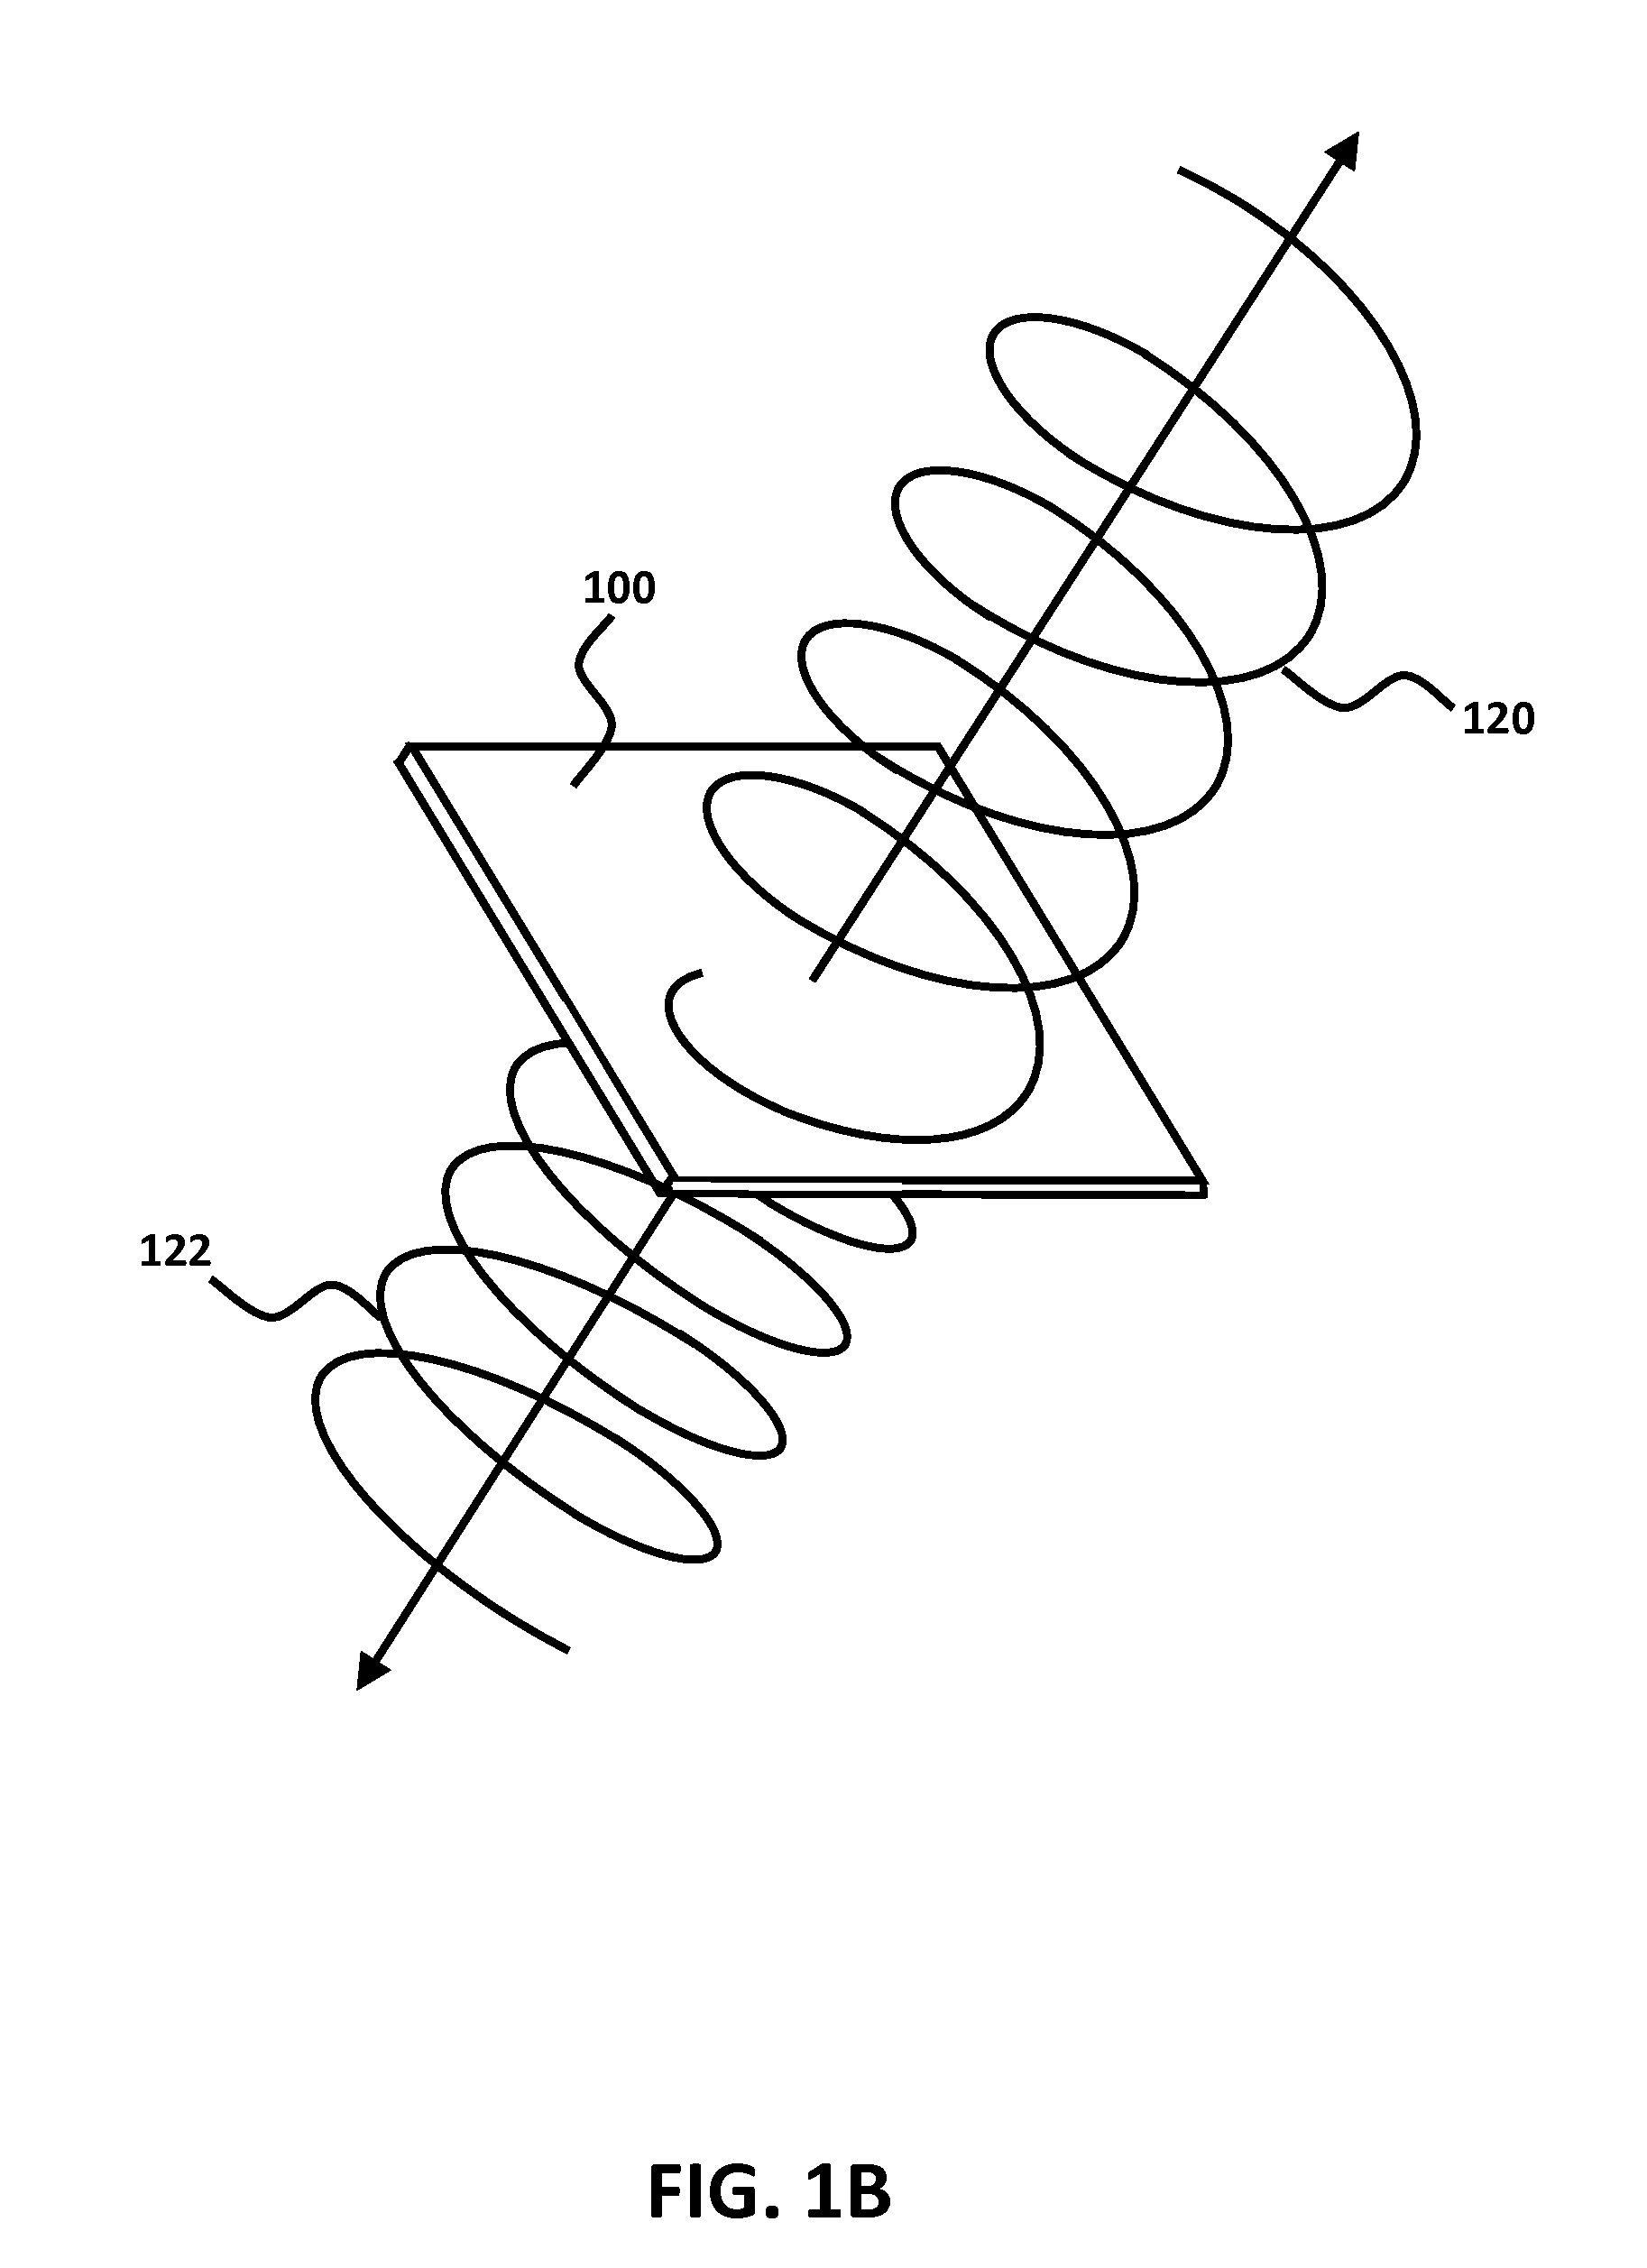 Circular polarized compound loop antenna